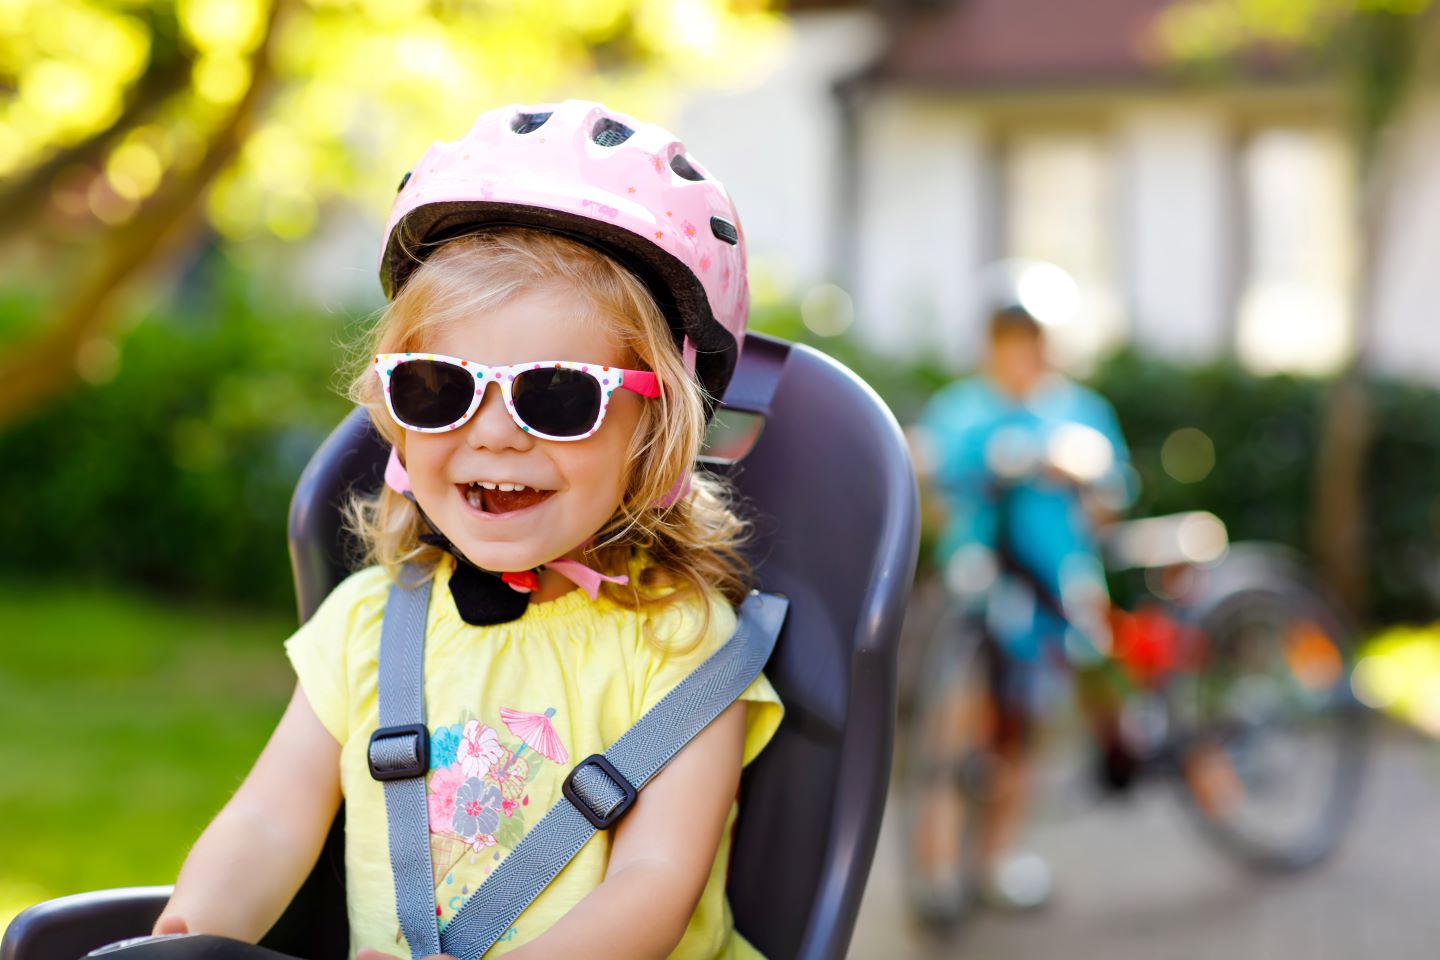 Siège Sécurité pour Enfant,Siège d'enfant avec Dossier,Bike Siège